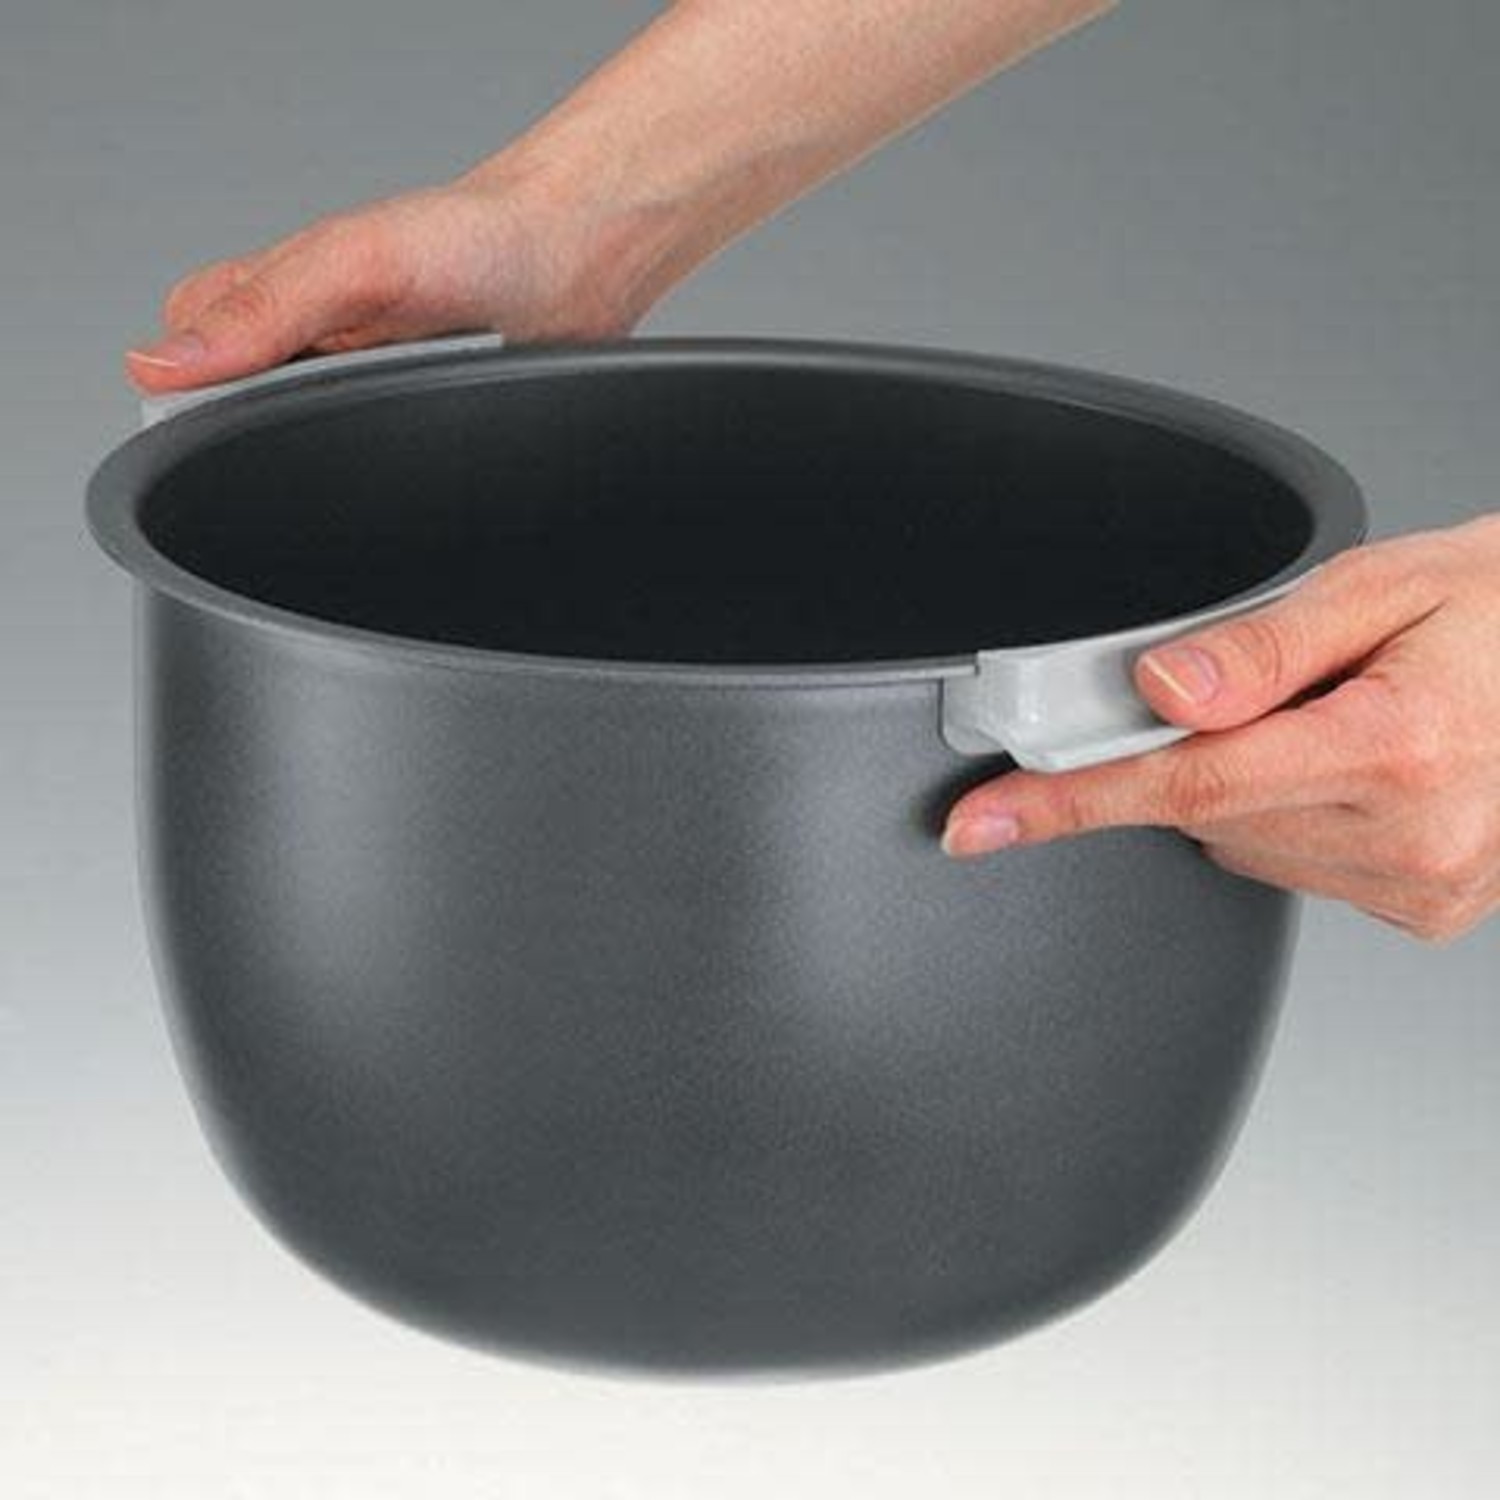 https://cdn.shoplightspeed.com/shops/633447/files/31834657/1500x4000x3/zojirushi-55-cup-neuro-fuzzy-rice-cooker.jpg